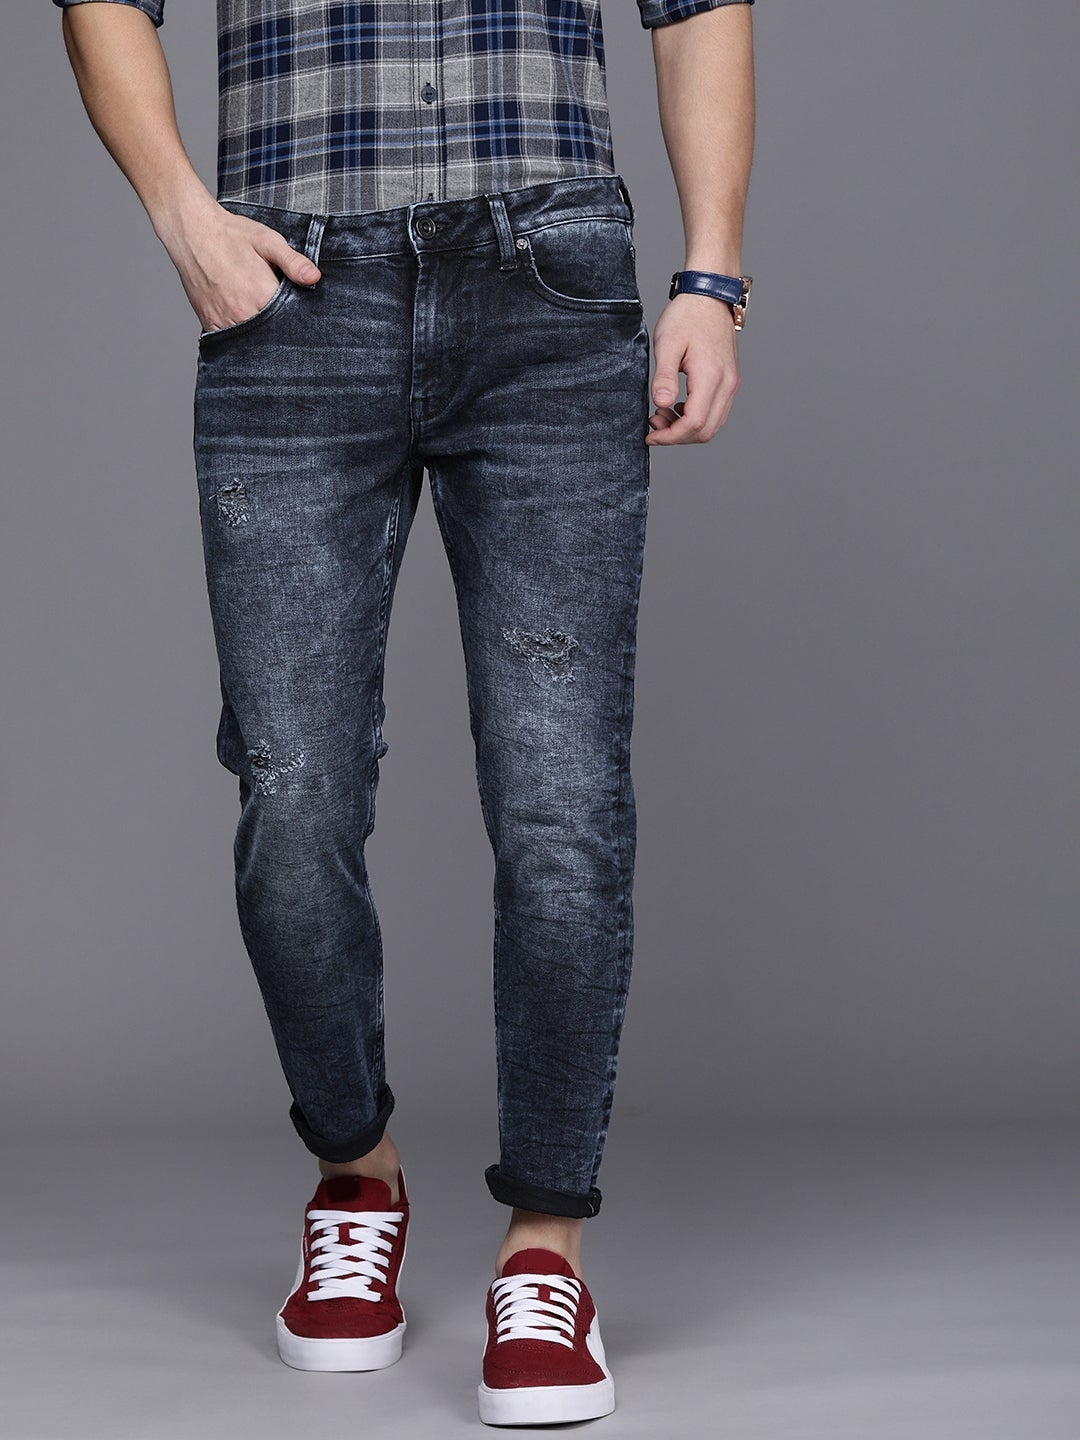 VOI JEANS | Men's Dark Indigo Skinny Cropped Stretchable Jeans (VOJN1662)